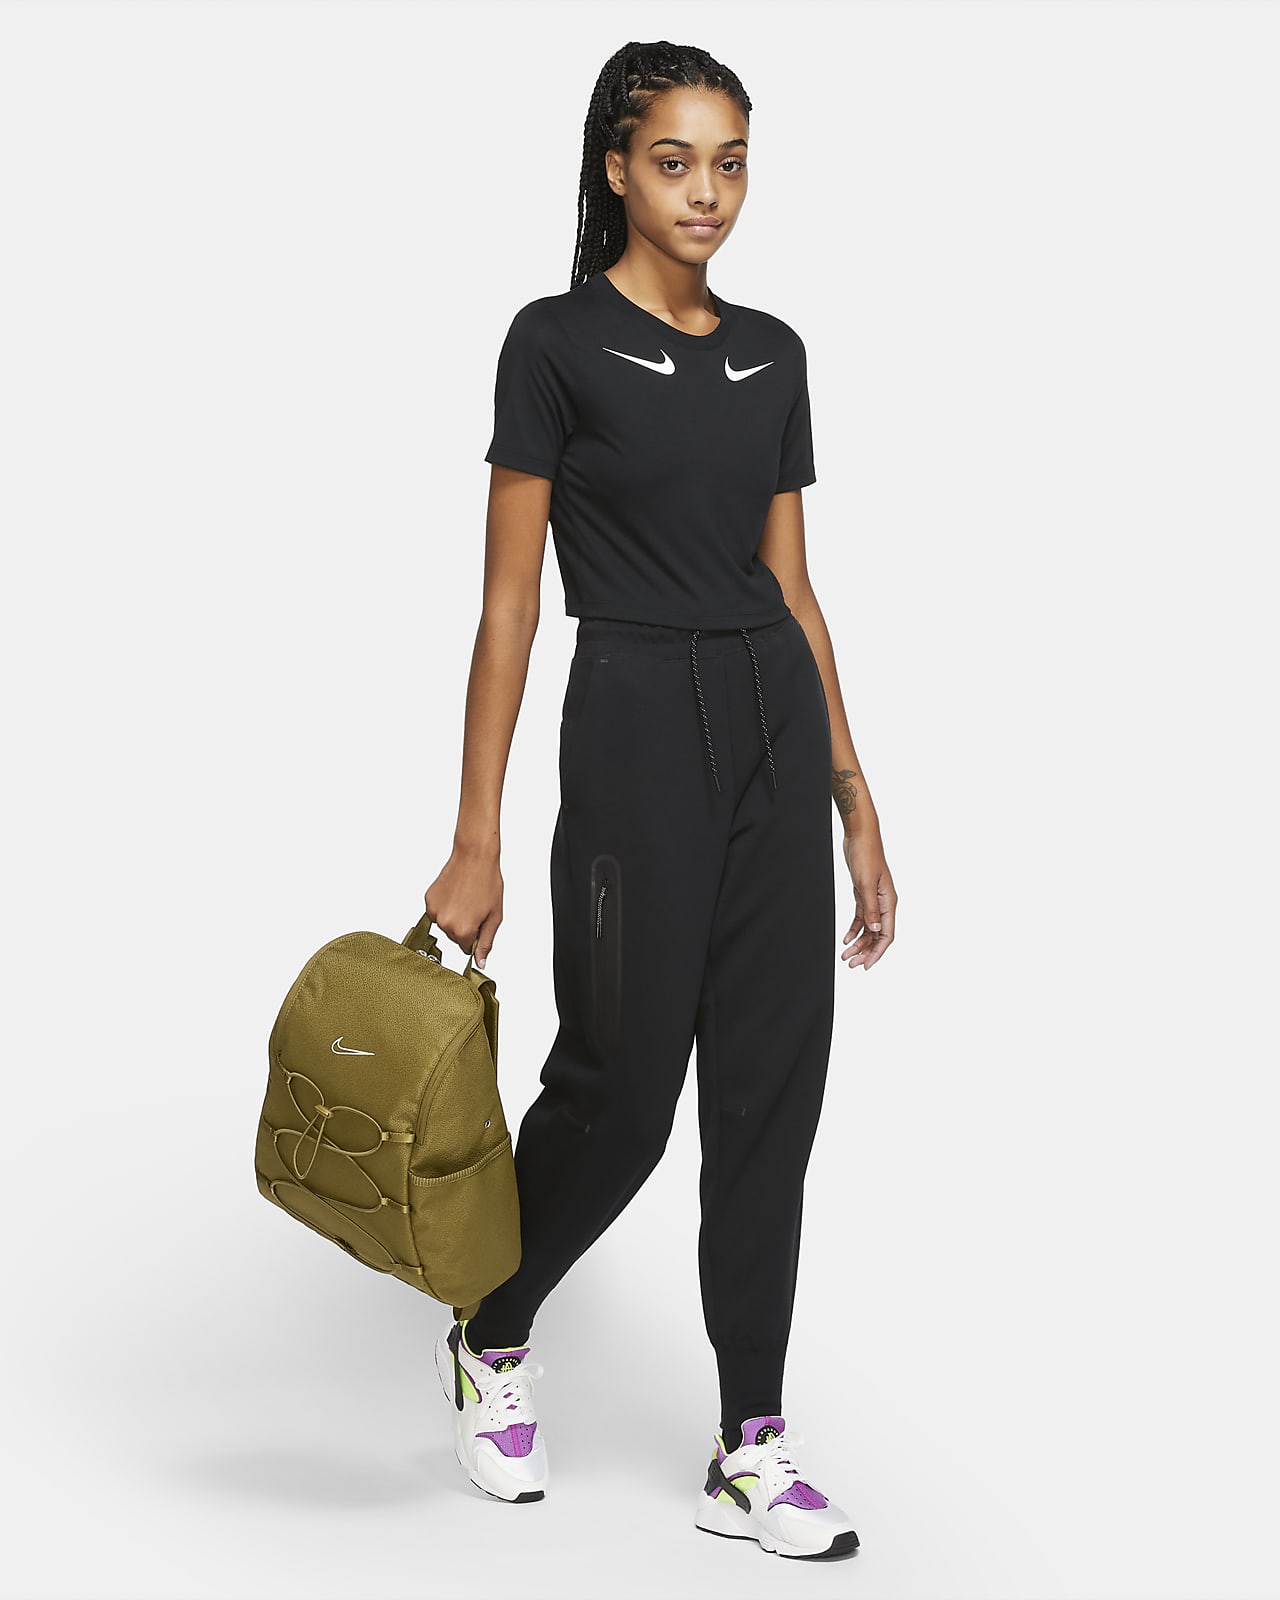 Nike One Women's Training Backpack (16L). Nike SG